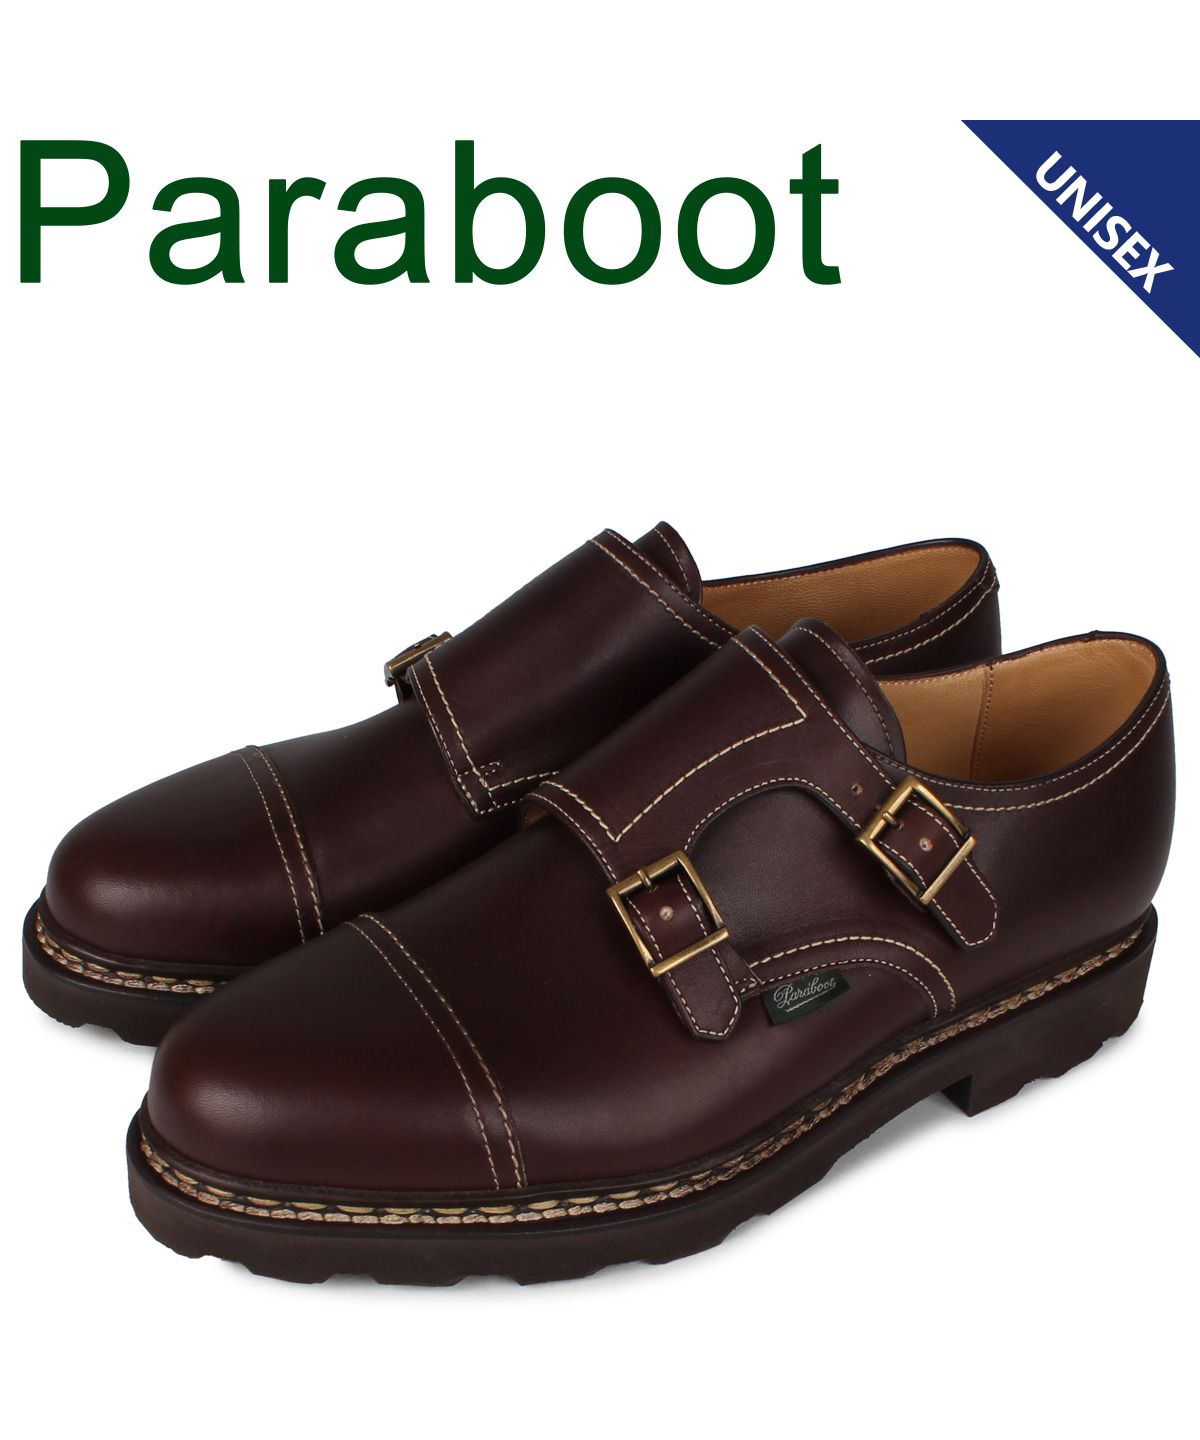 パラブーツ PARABOOT ウィリアム 靴 シューズ ダブルモンクシューズ メンズ レディース WILLIAM ブラウン  981413(504043646) | パラブーツ(PARABOOT) - MAGASEEK